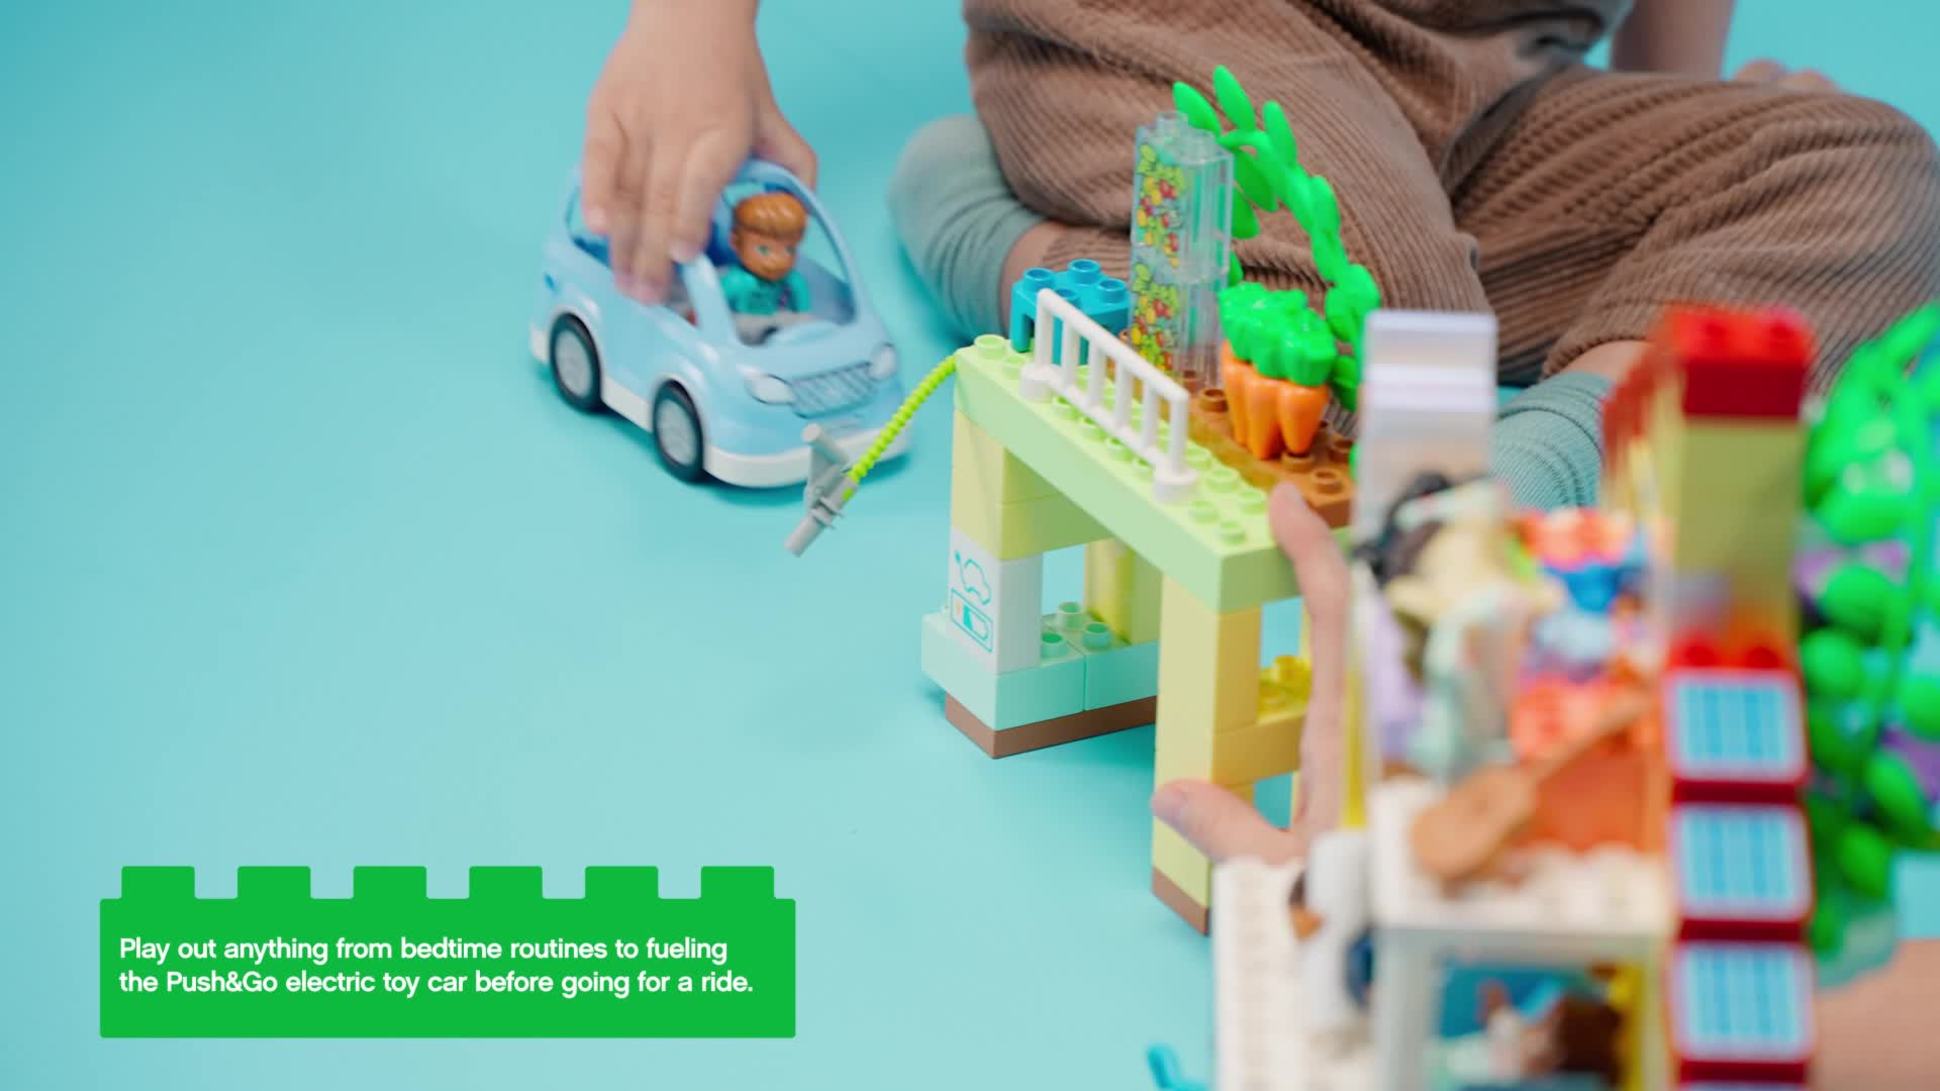 LEGO DUPLO Casetta 3 in 1, Casa delle Bambole in Mattoncini con Auto  Push-and-Go